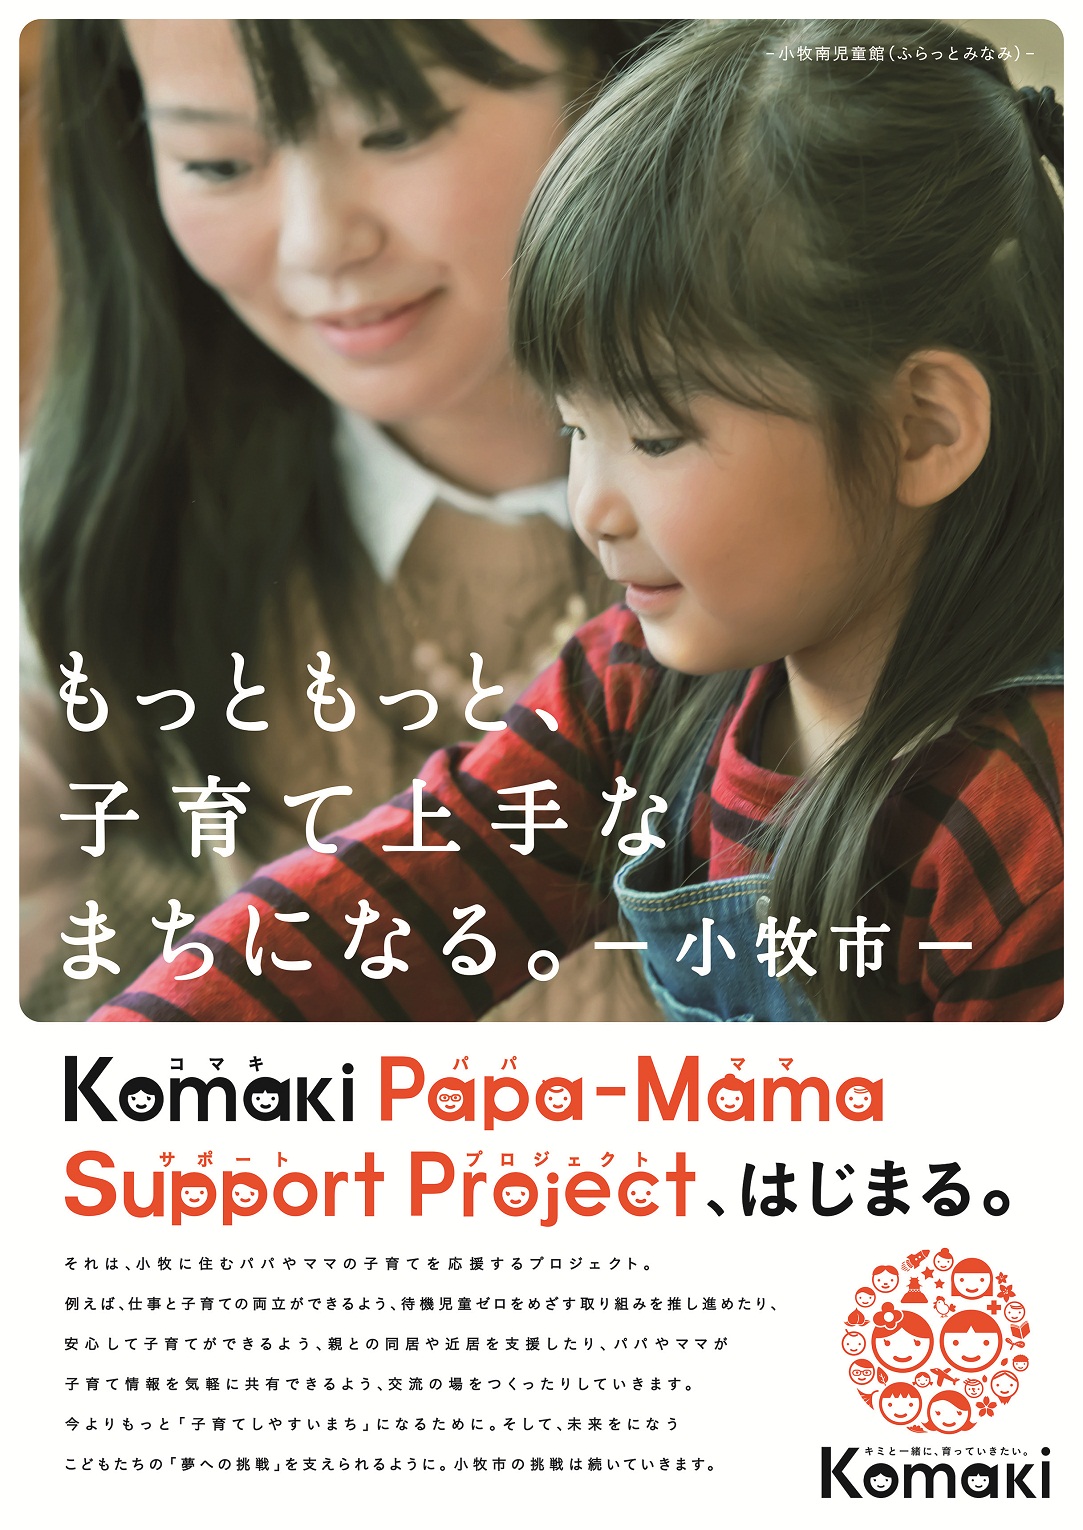 もっともっと、子育て上手なまちになる。小牧市 Komaki Papa-mama Support Project、はじまる。